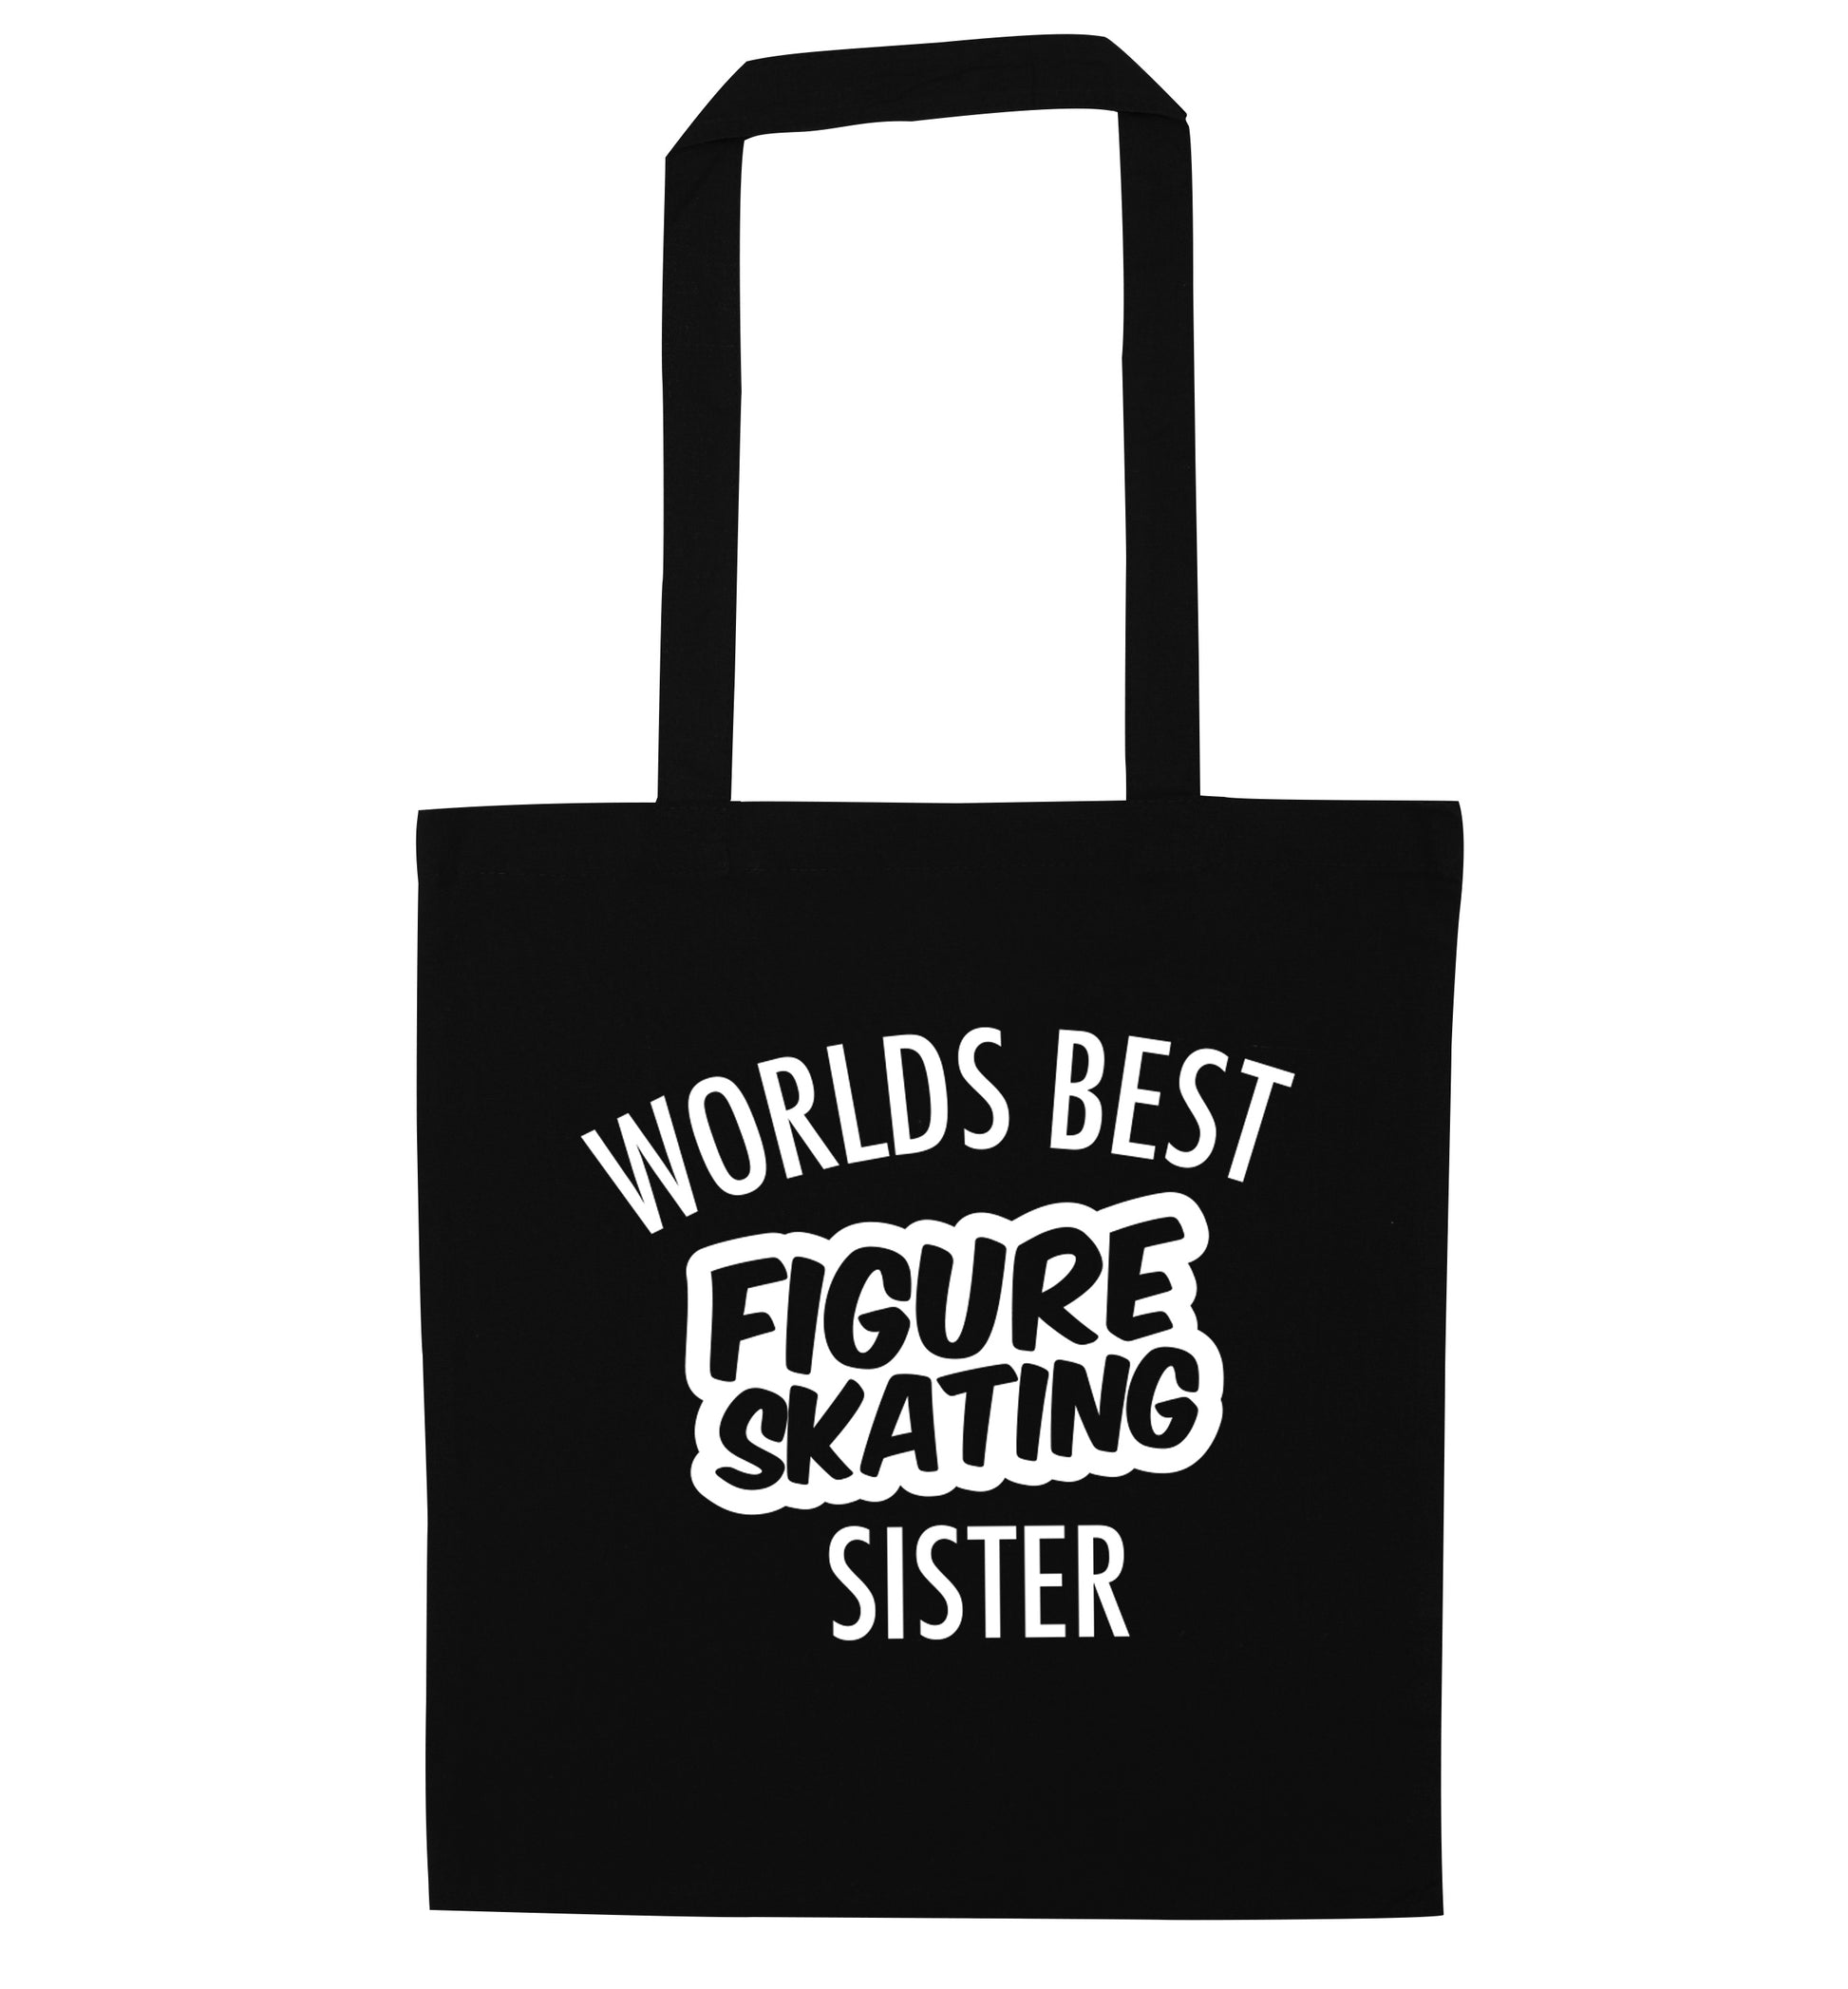 Worlds best figure skating sisterblack tote bag